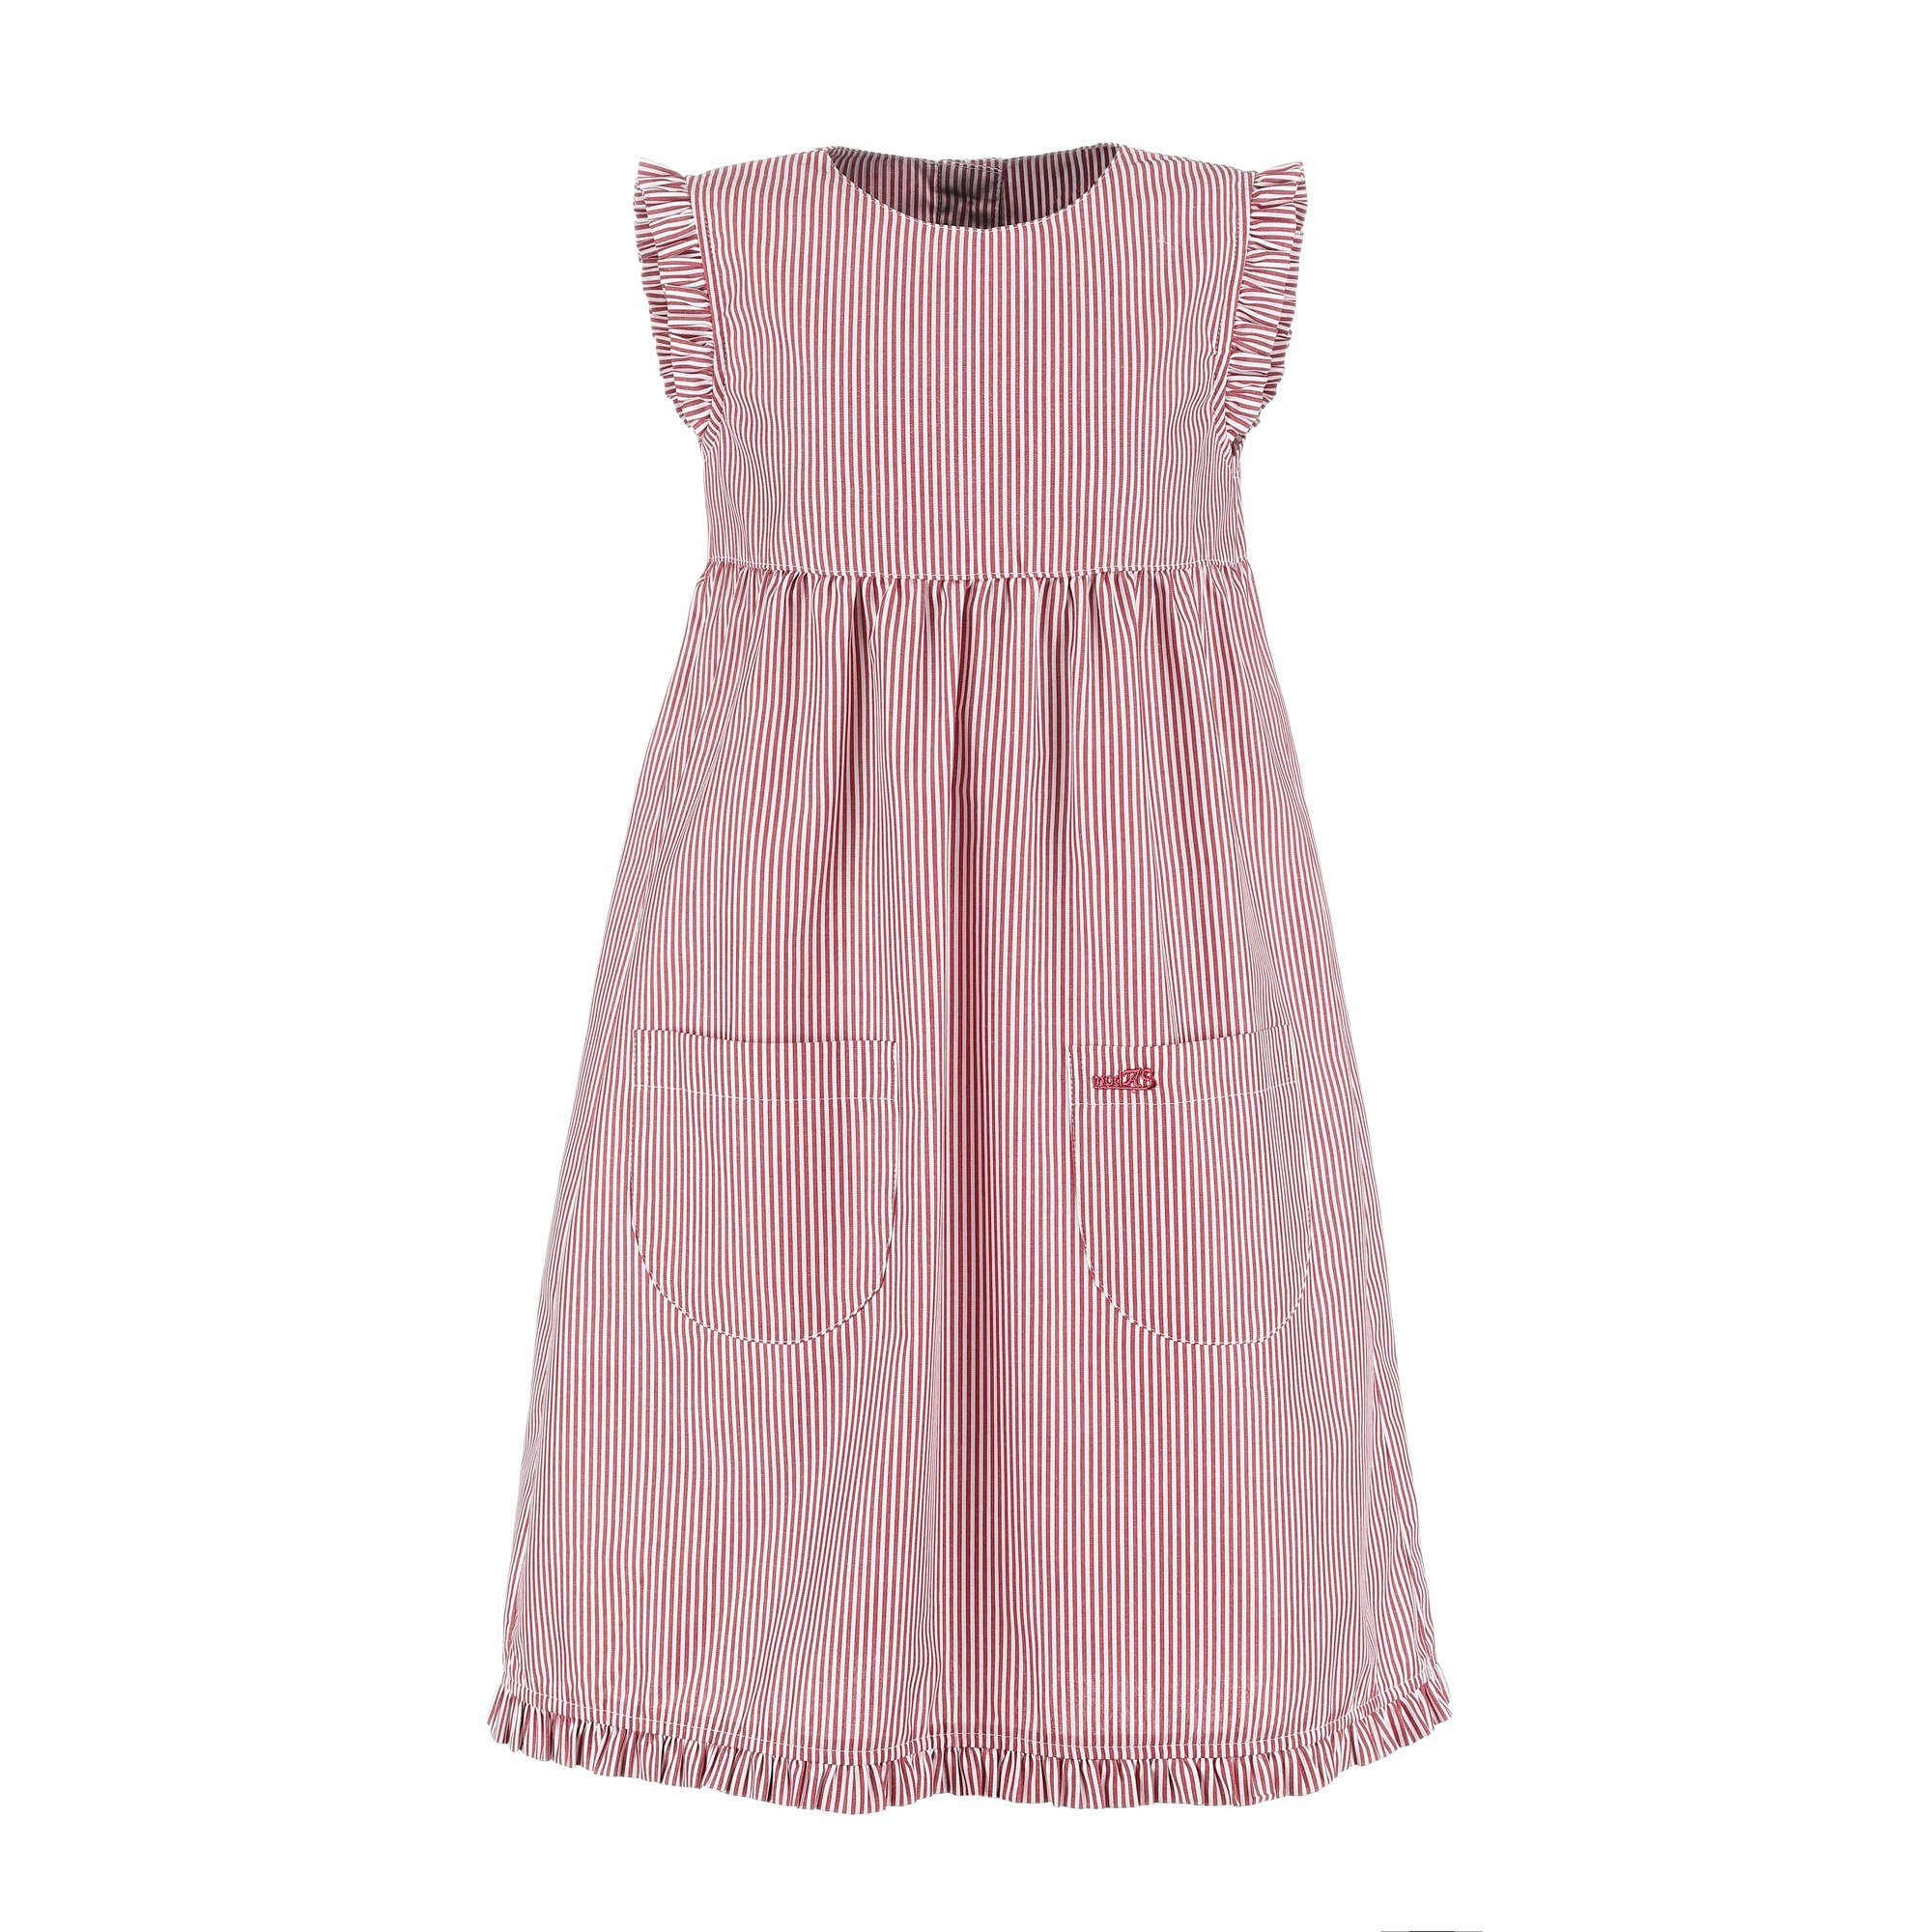 modAS Sommerkleid Kinder Kleid gestreift mit Rüschen - Mädchenkleid mit Streifen (023) rot/weiß gestreift